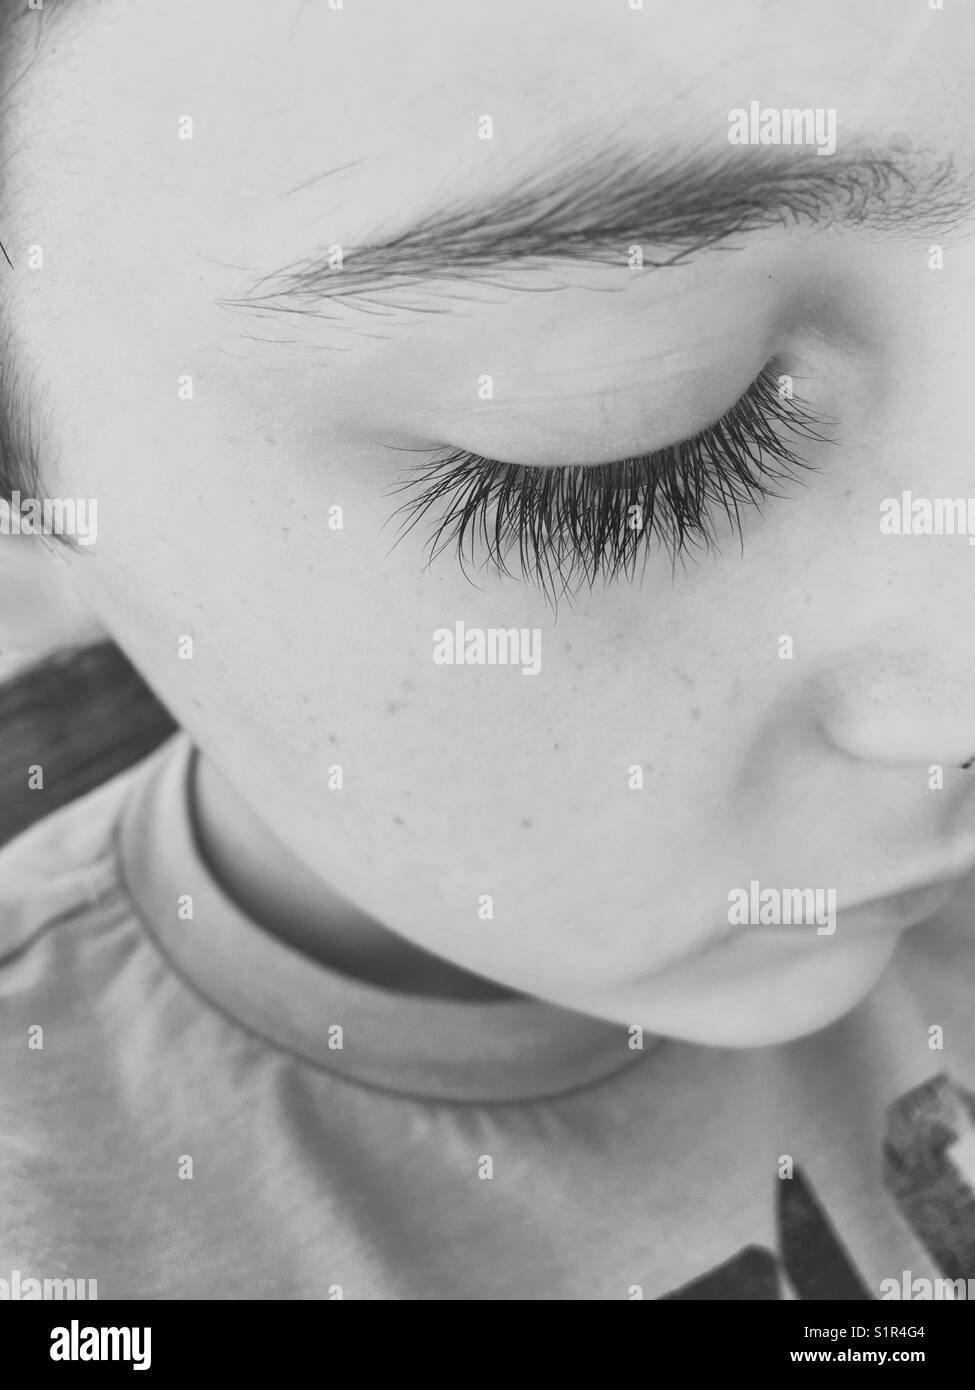 Eyelashes of a child Stock Photo